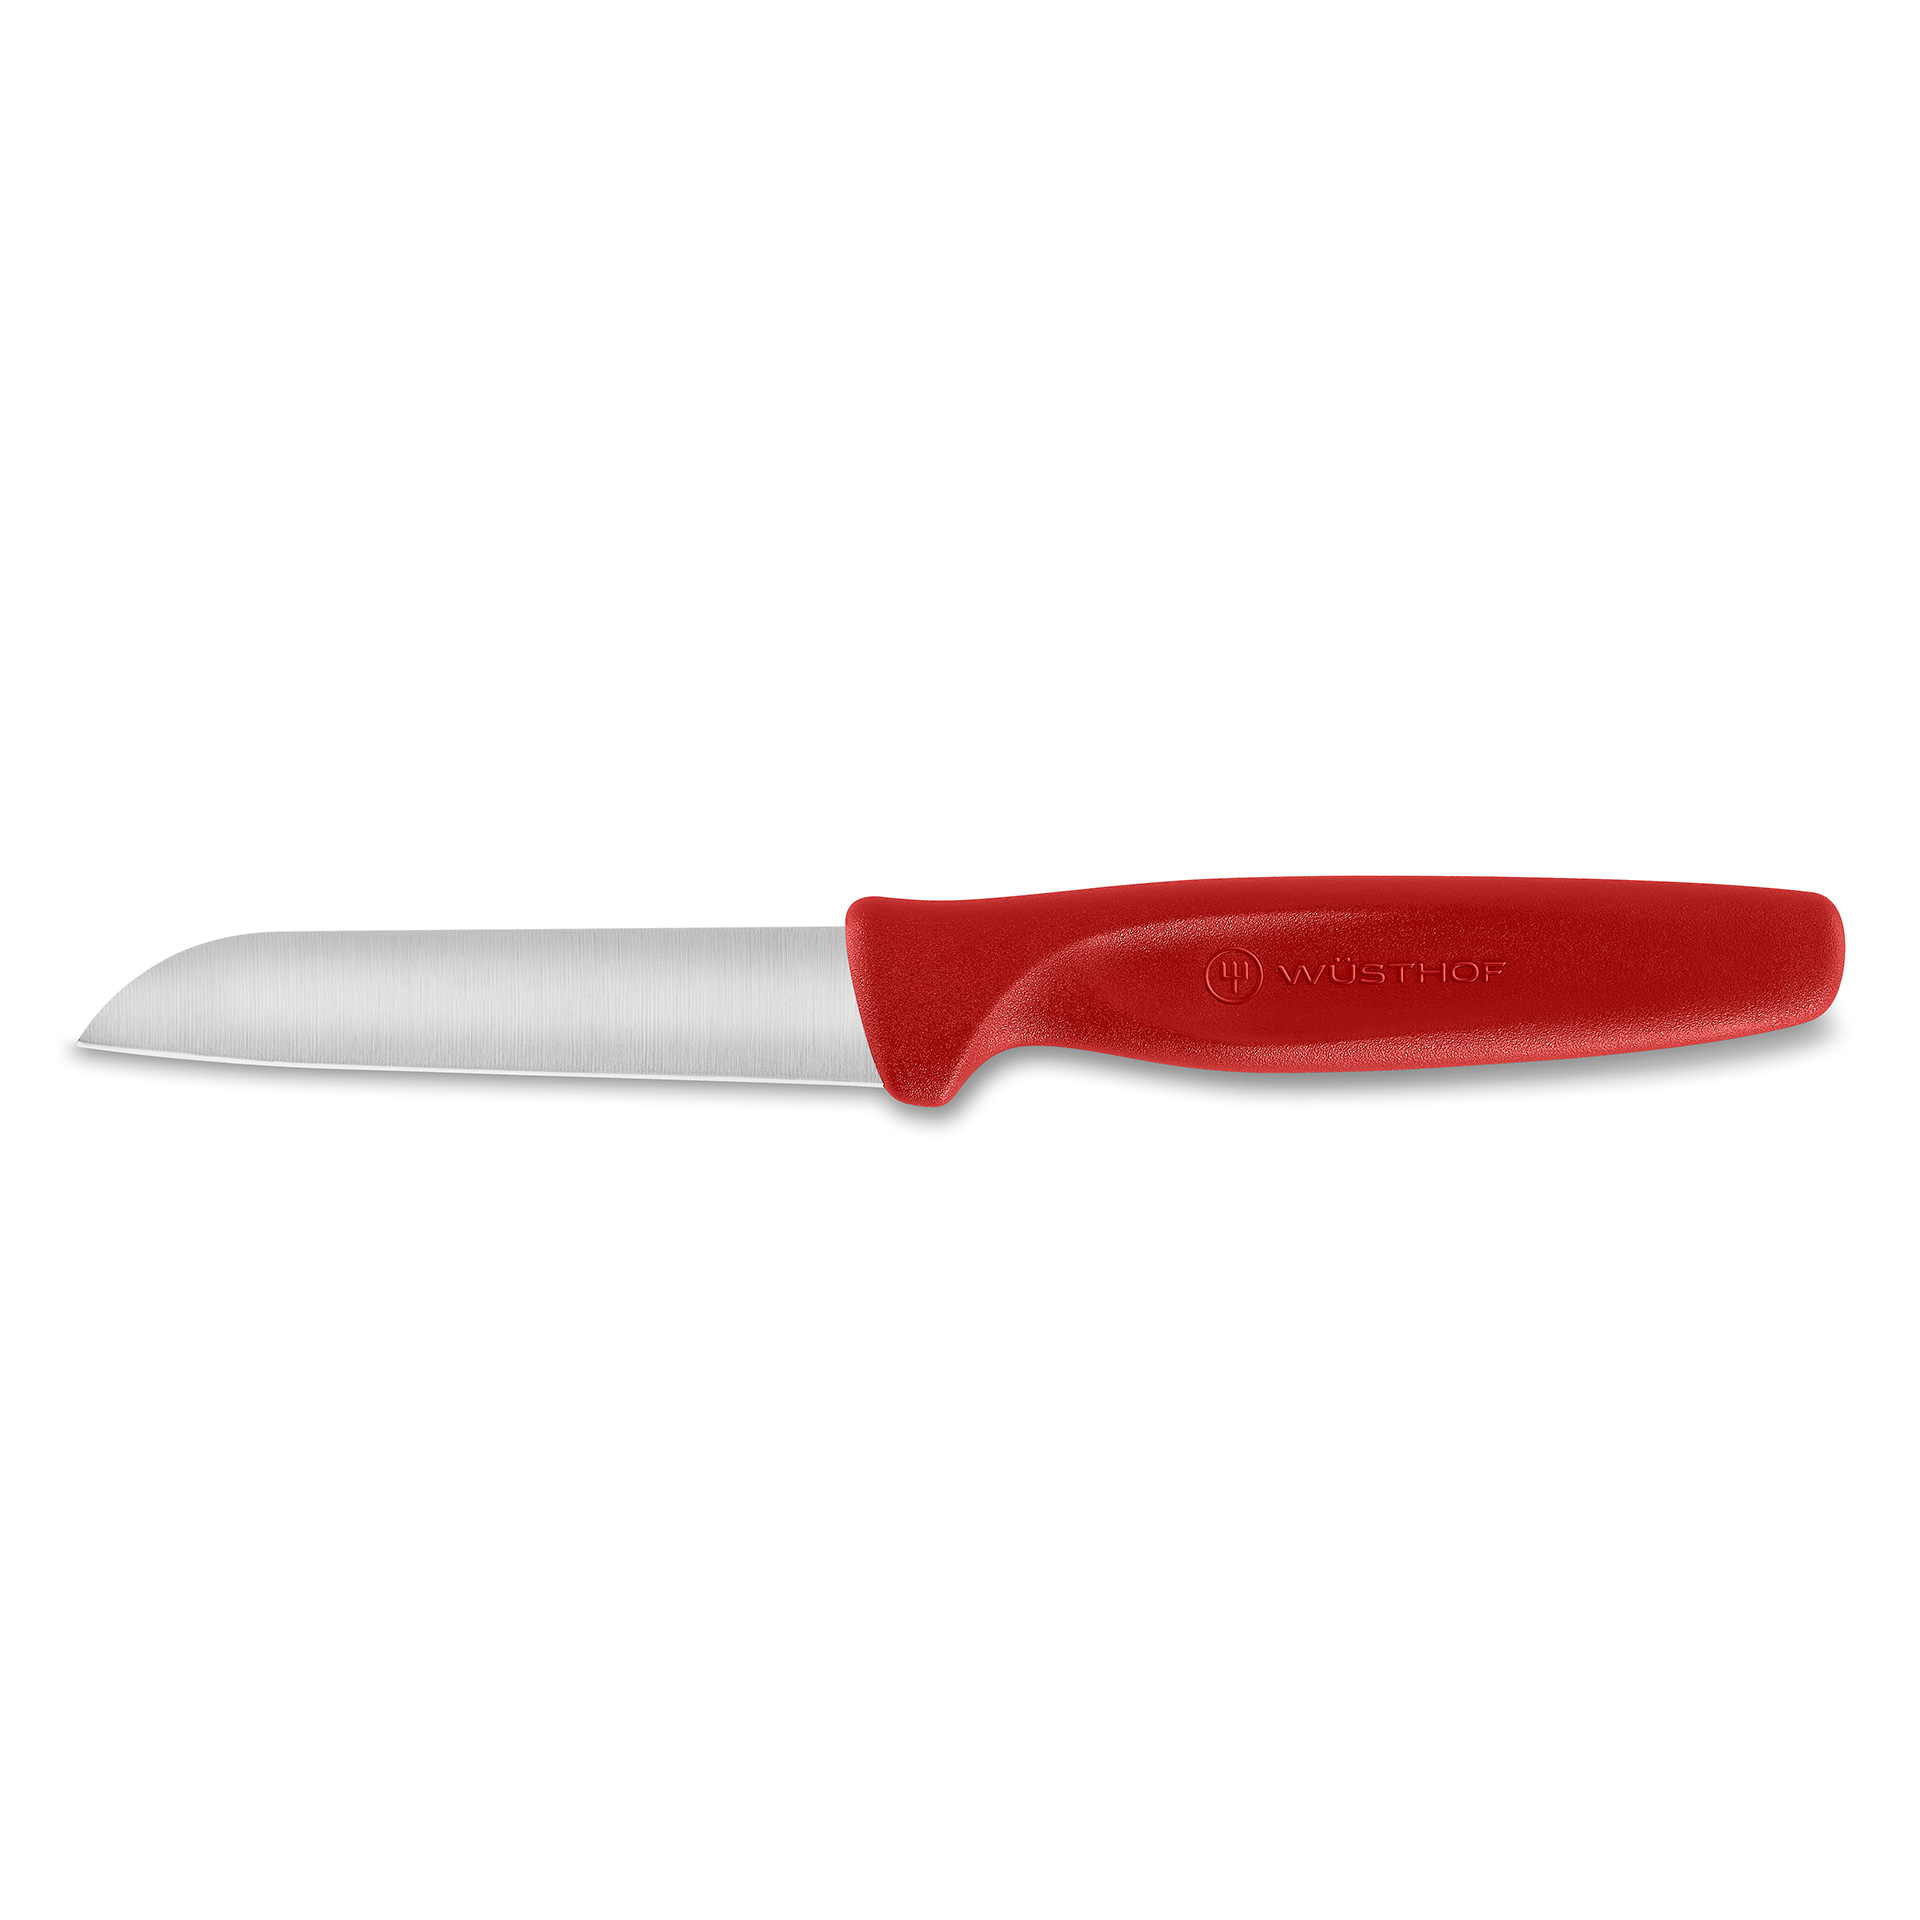 Nóż do warzyw czerwony dł. 8 cm CREATE COLLECTION - WÜSTHOF